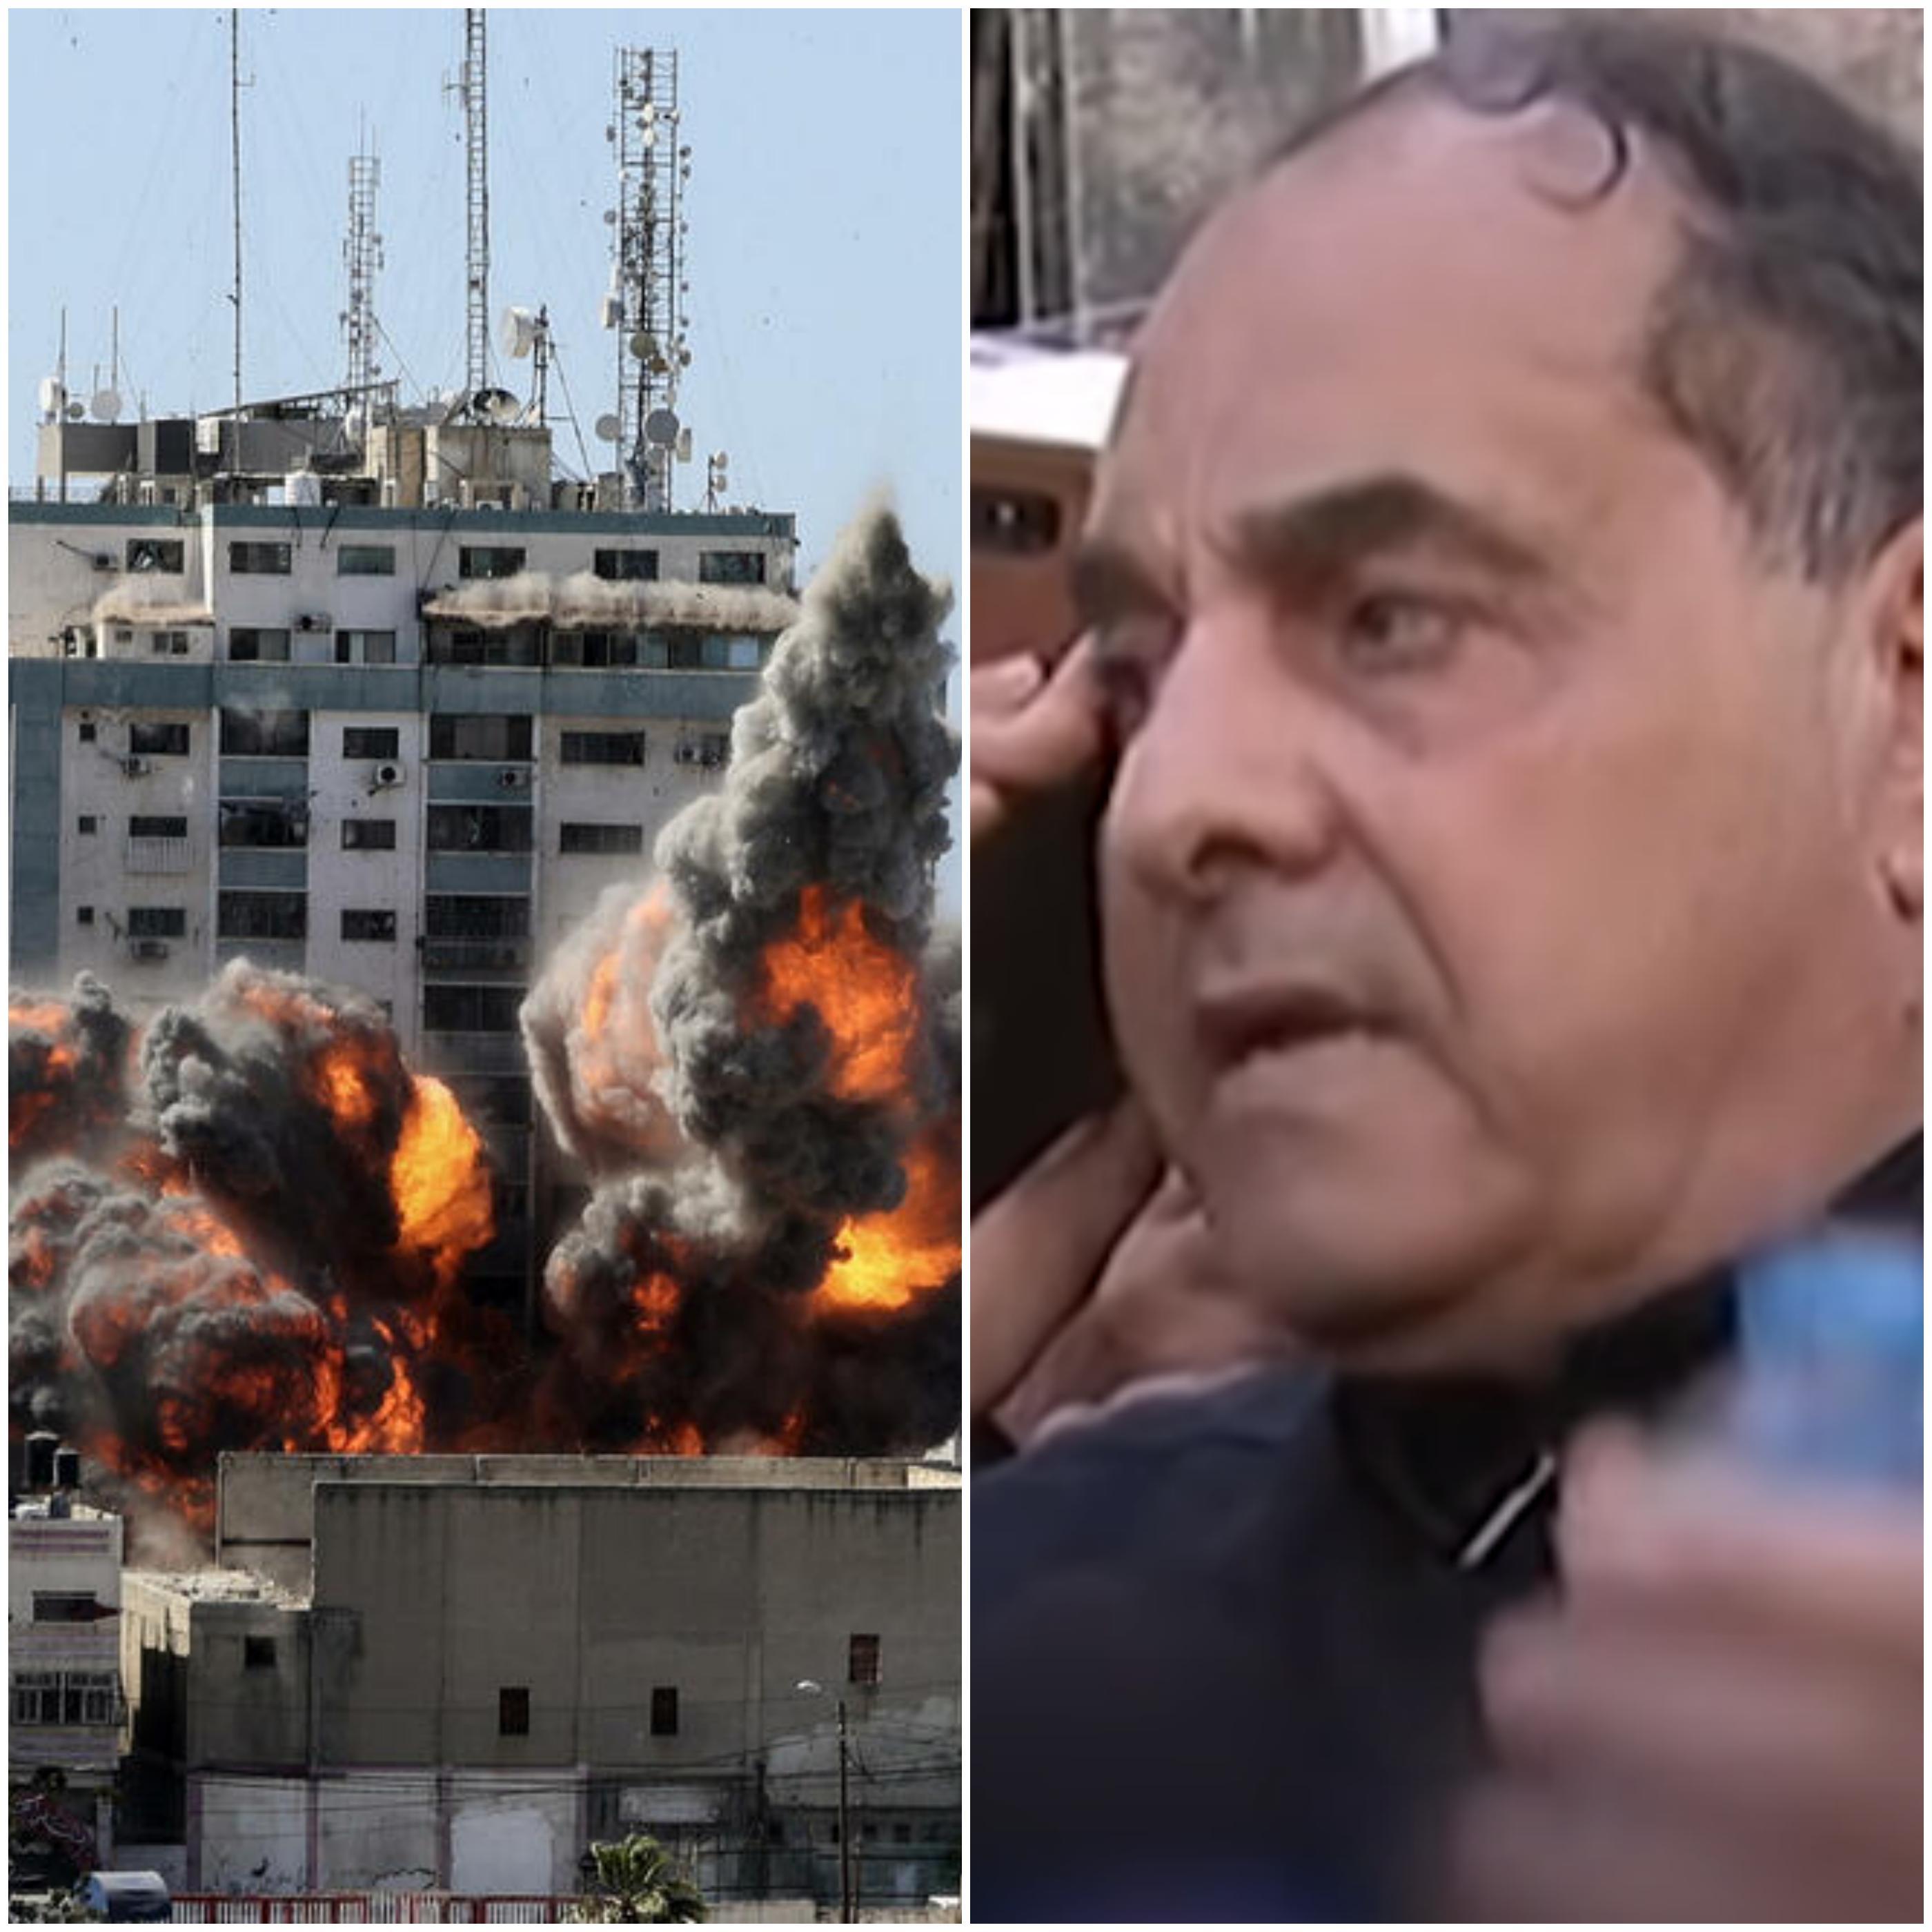 Vlasnik srušenog tornja u Gazi prije bombardovanja pričao s IDF-om pred kamerama, ali uzalud